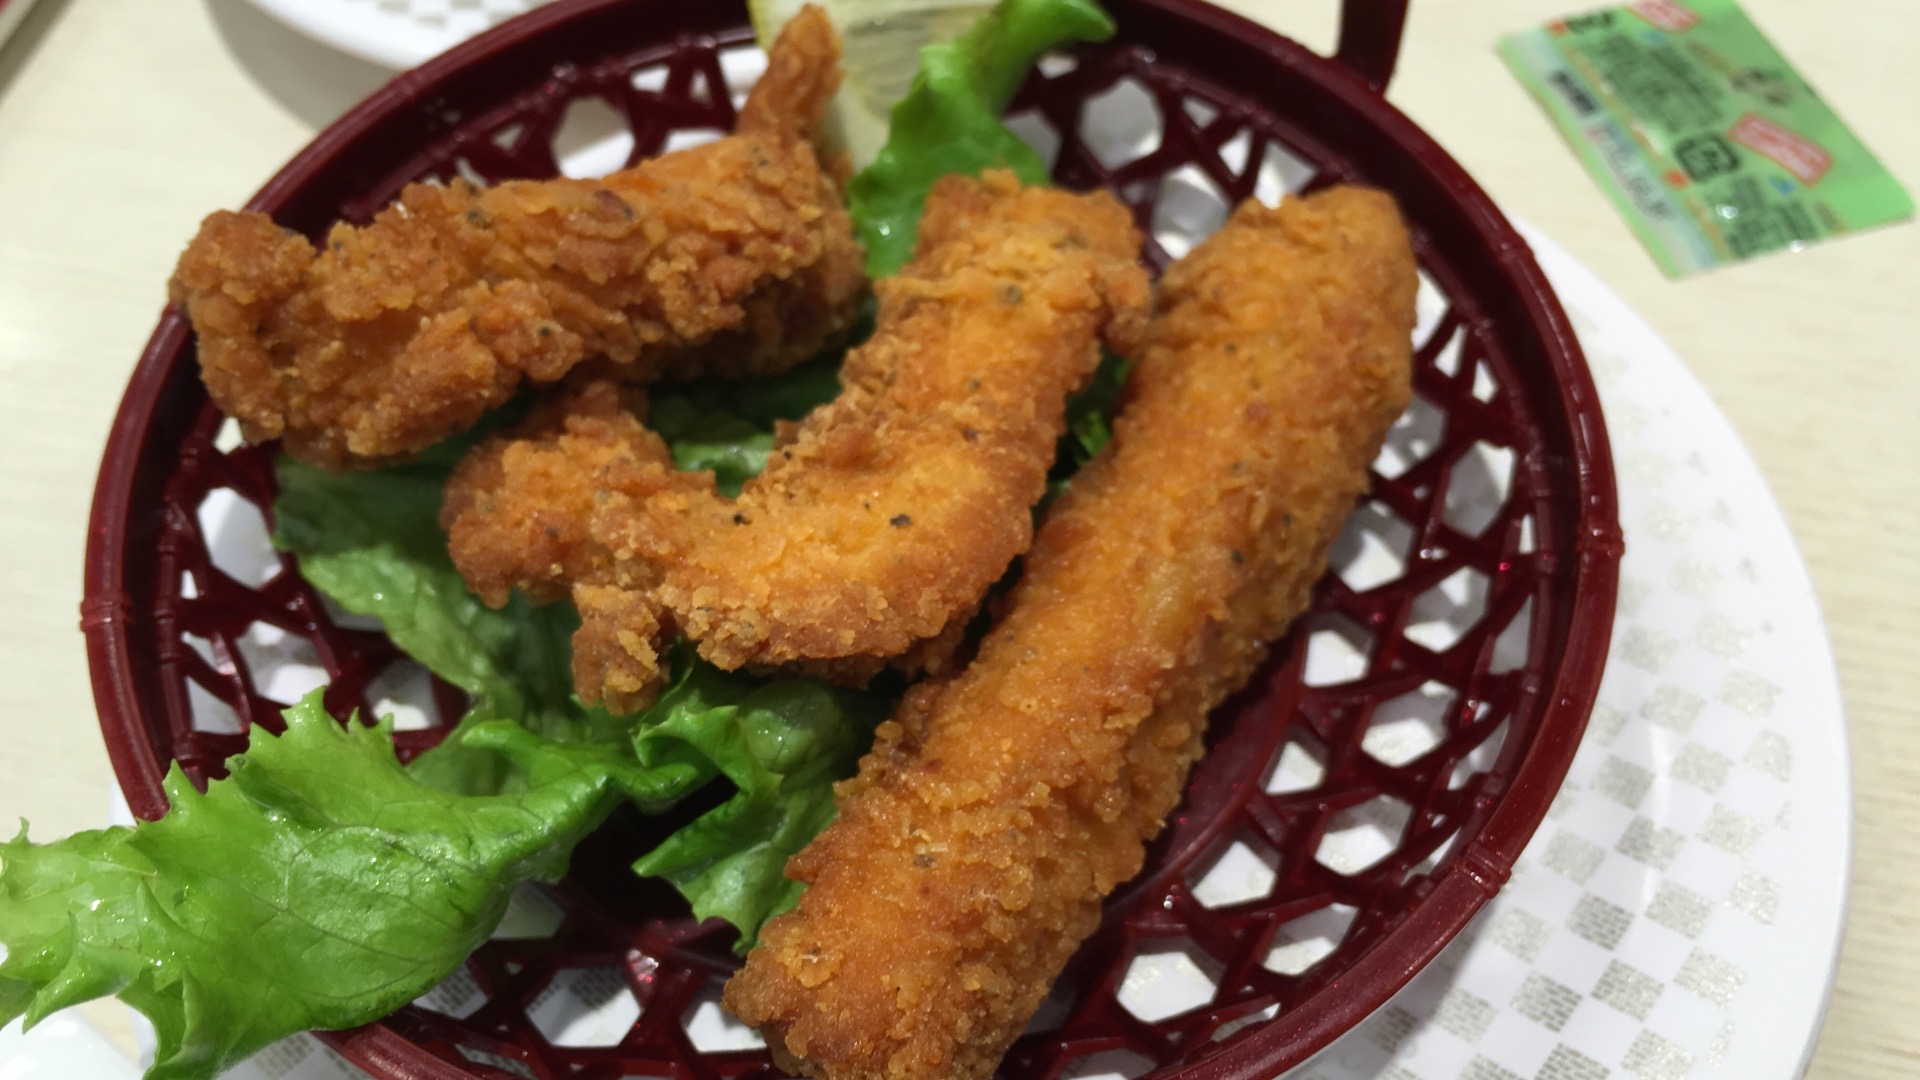 【さいたま市大宮区】一皿100円の「魚べい」は少しおしゃれな雰囲気の回転寿司屋